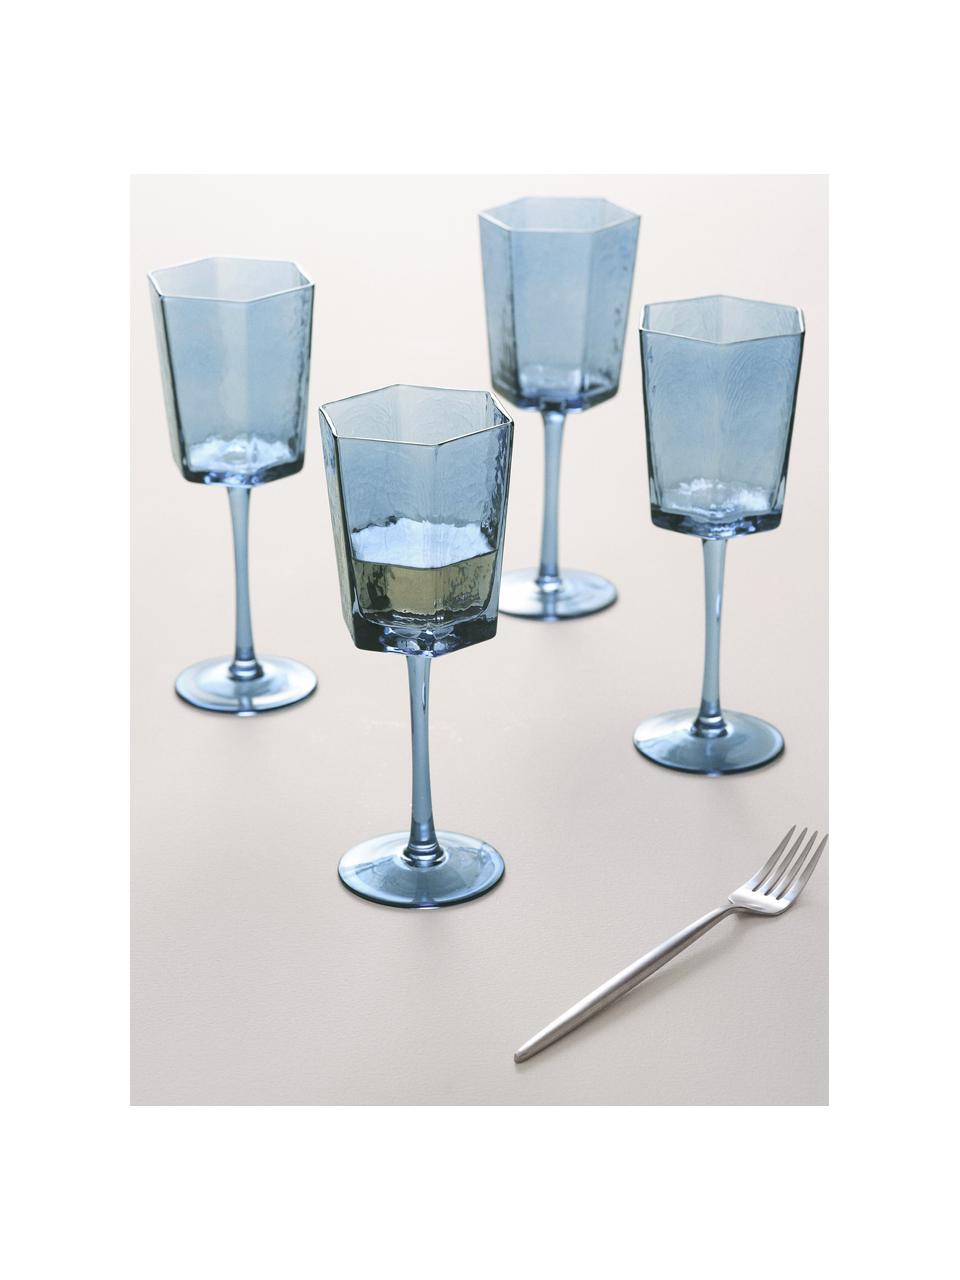 Wijnglazen Amory in blauw, 4 stuks, Glas, Blauw, transparant, Ø 9 x H 22 cm, 350 ml